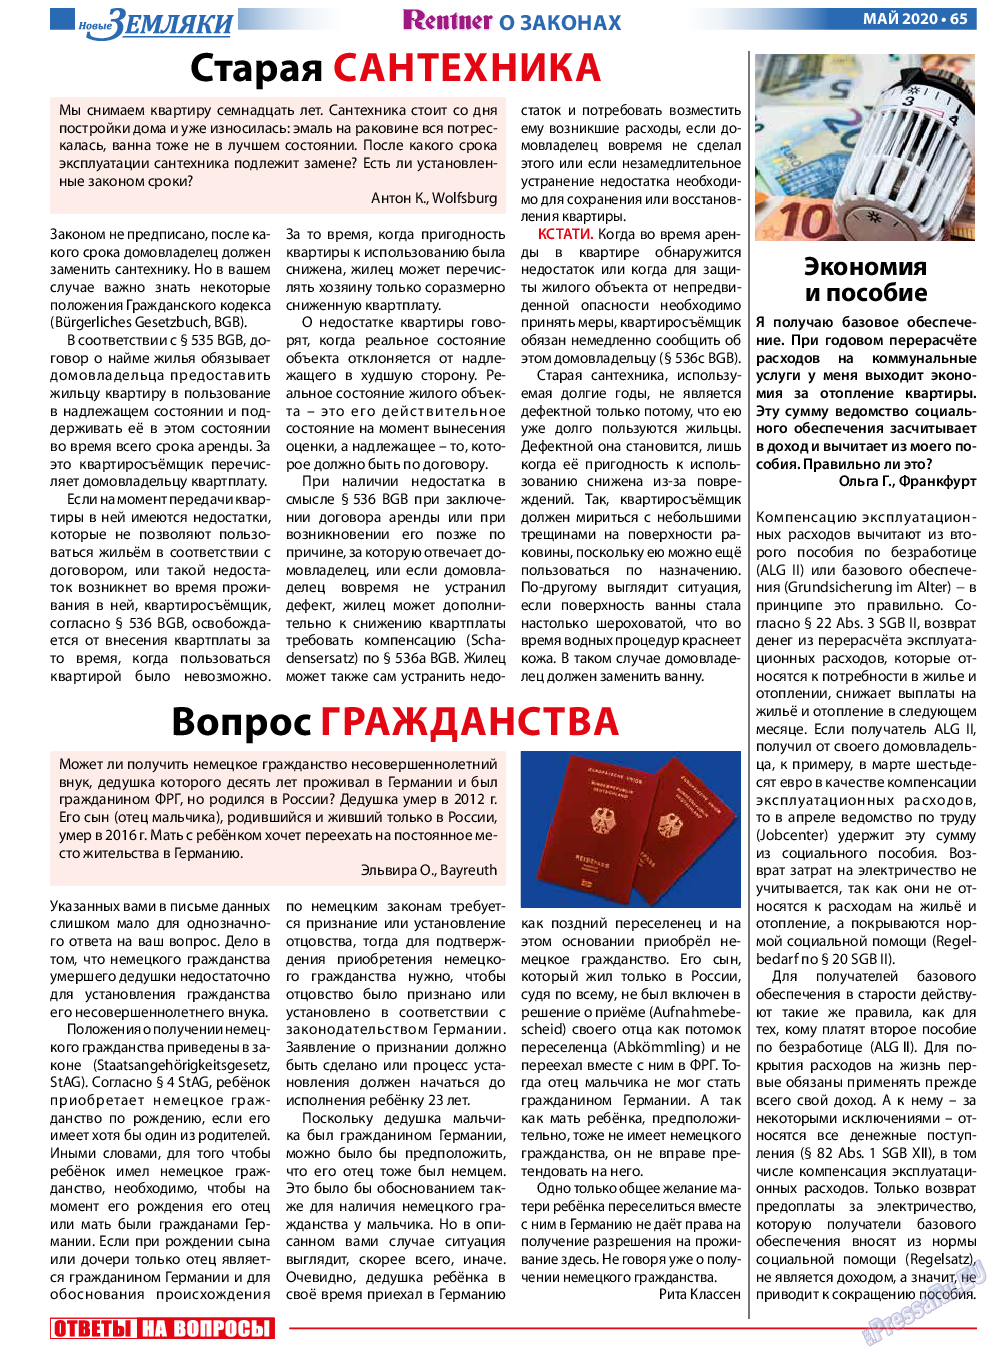 Новые Земляки (газета). 2020 год, номер 5, стр. 65